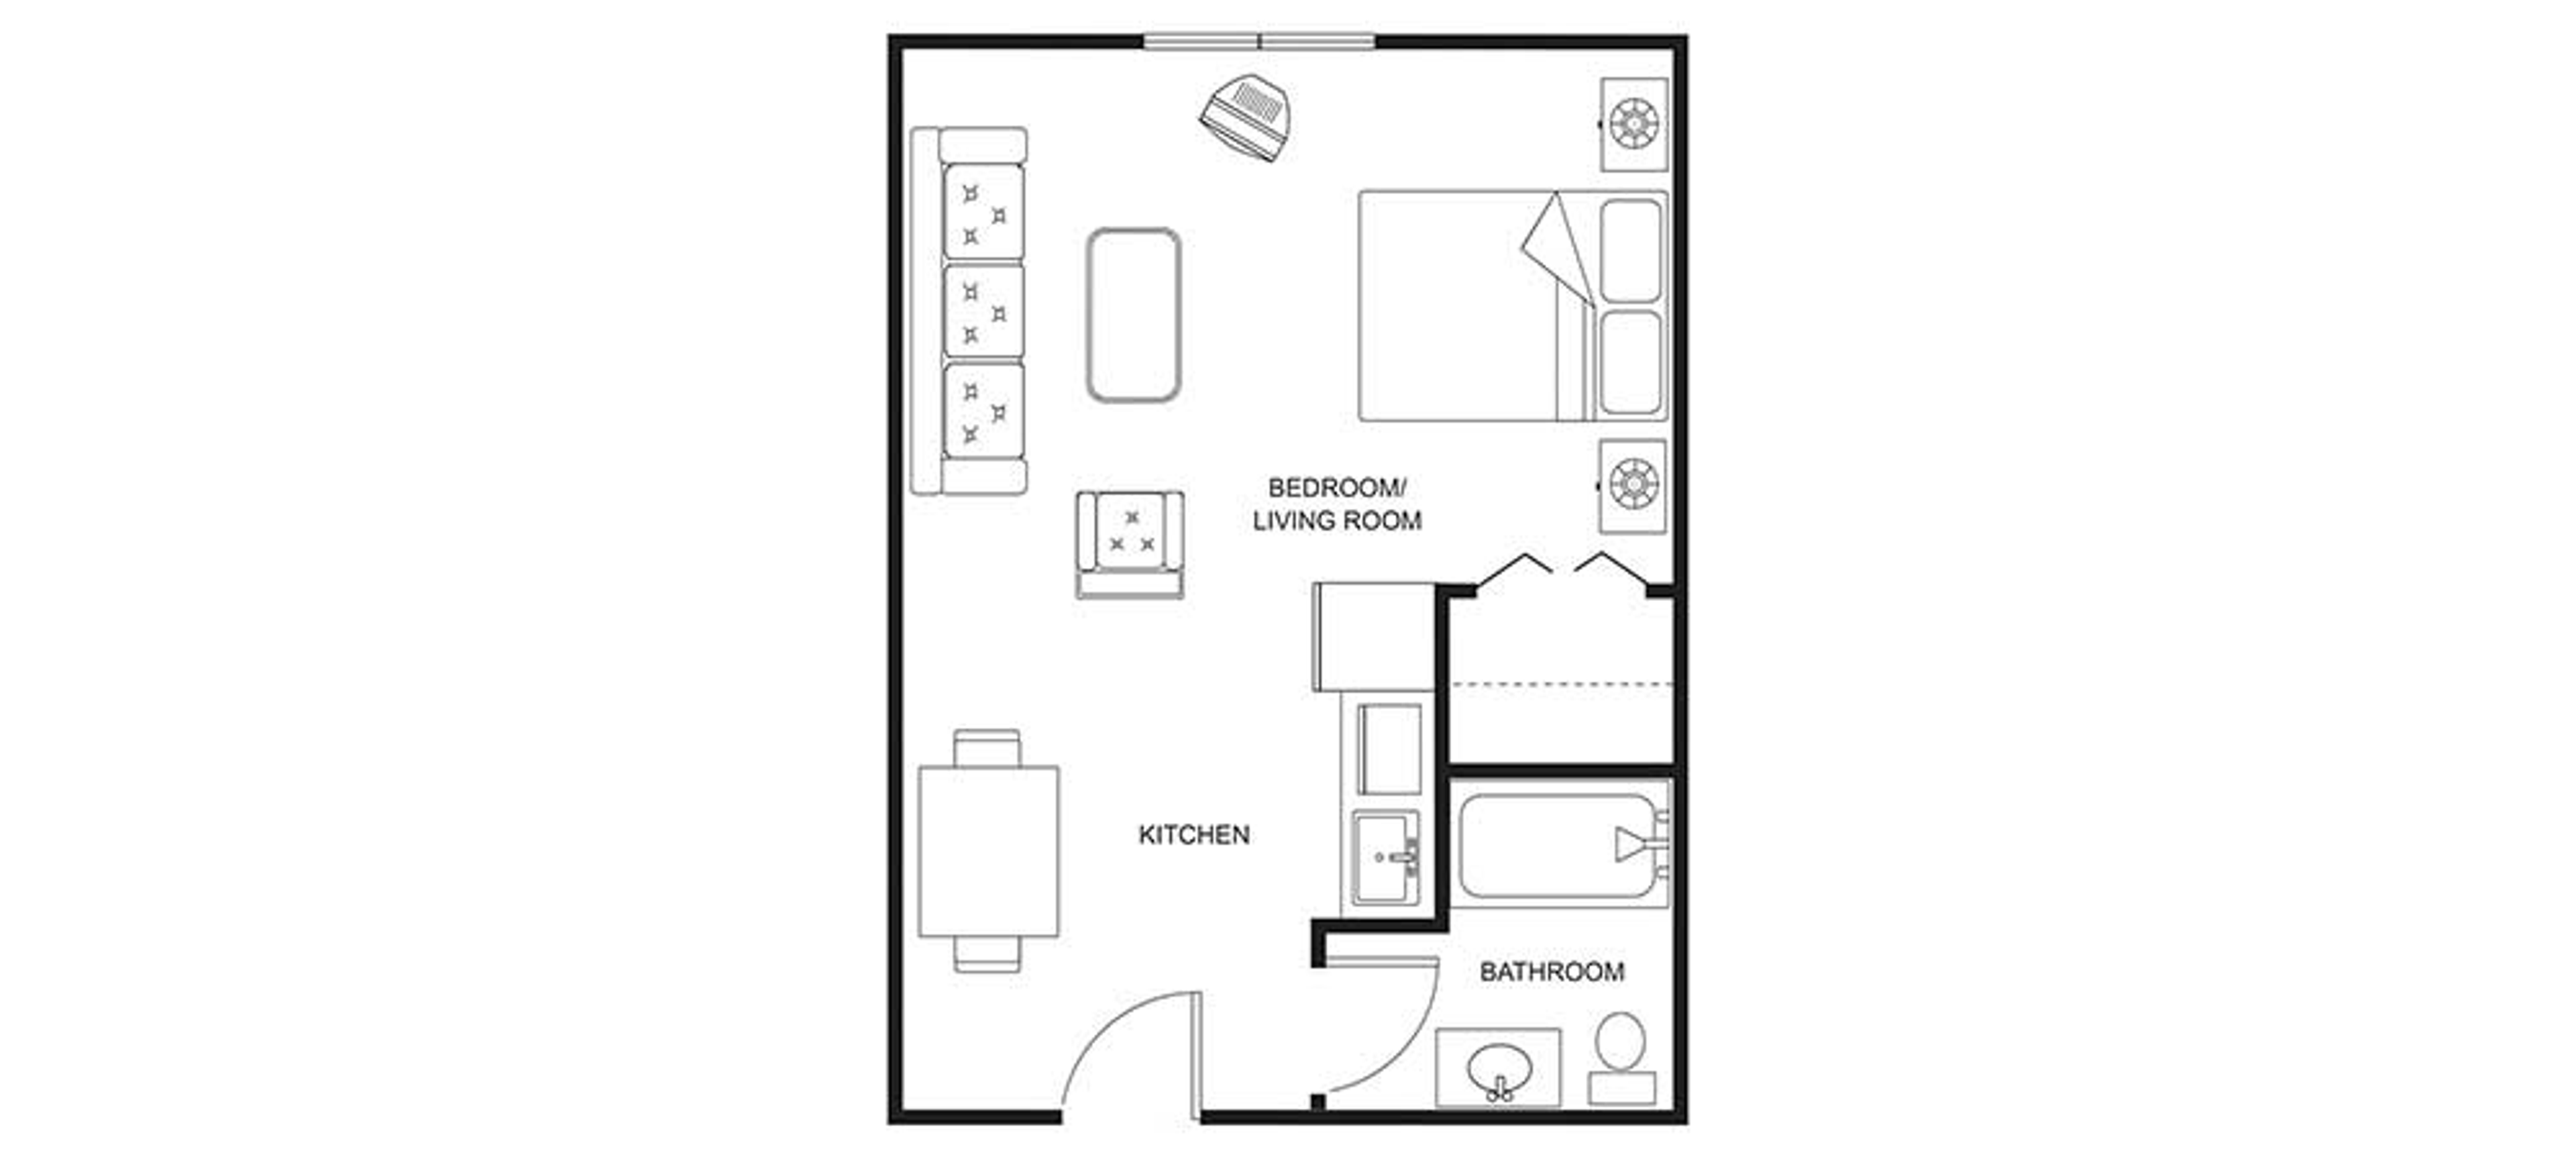 Floorplan - Clearwater Springs - Studio 381 sqft Assisted Living 